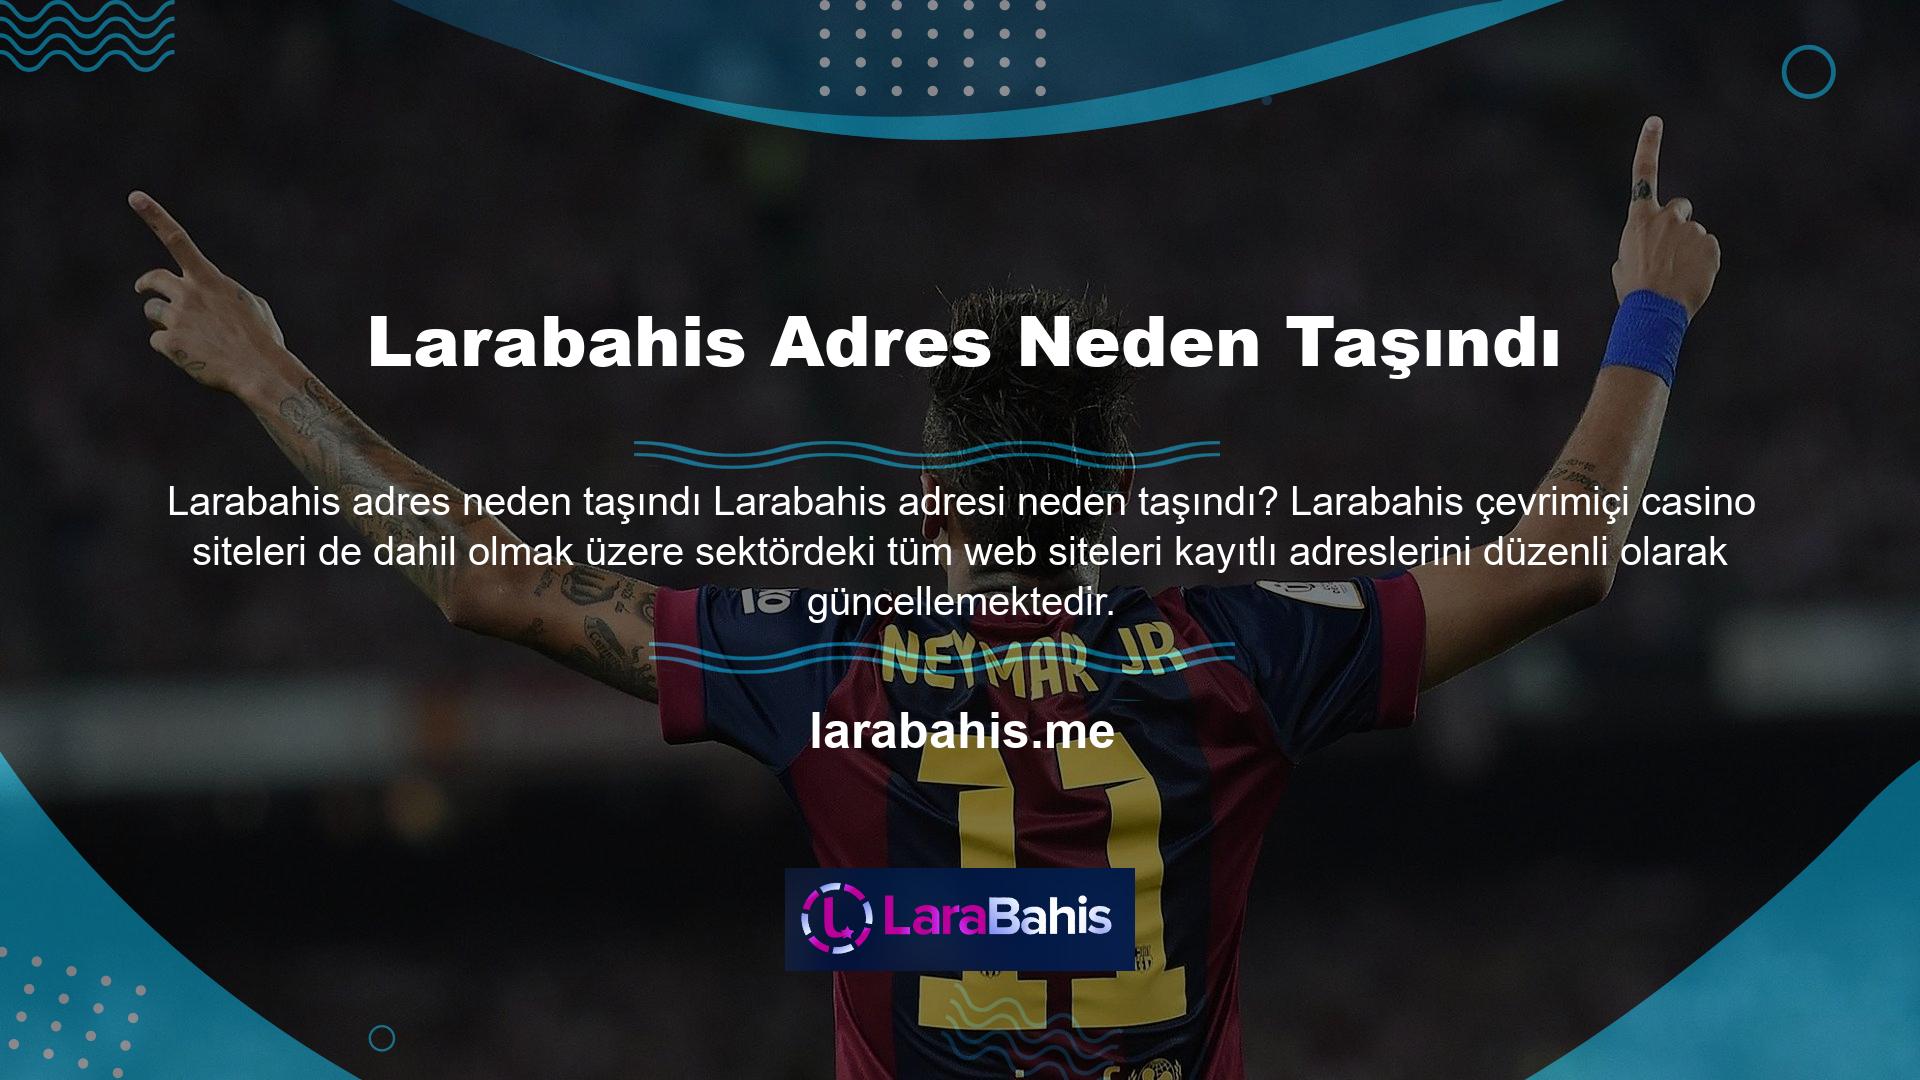 Larabahis sitelerinin adreslerini güncellemesinin temel nedeni üyelerin siteye tam erişimini sağlamaktır